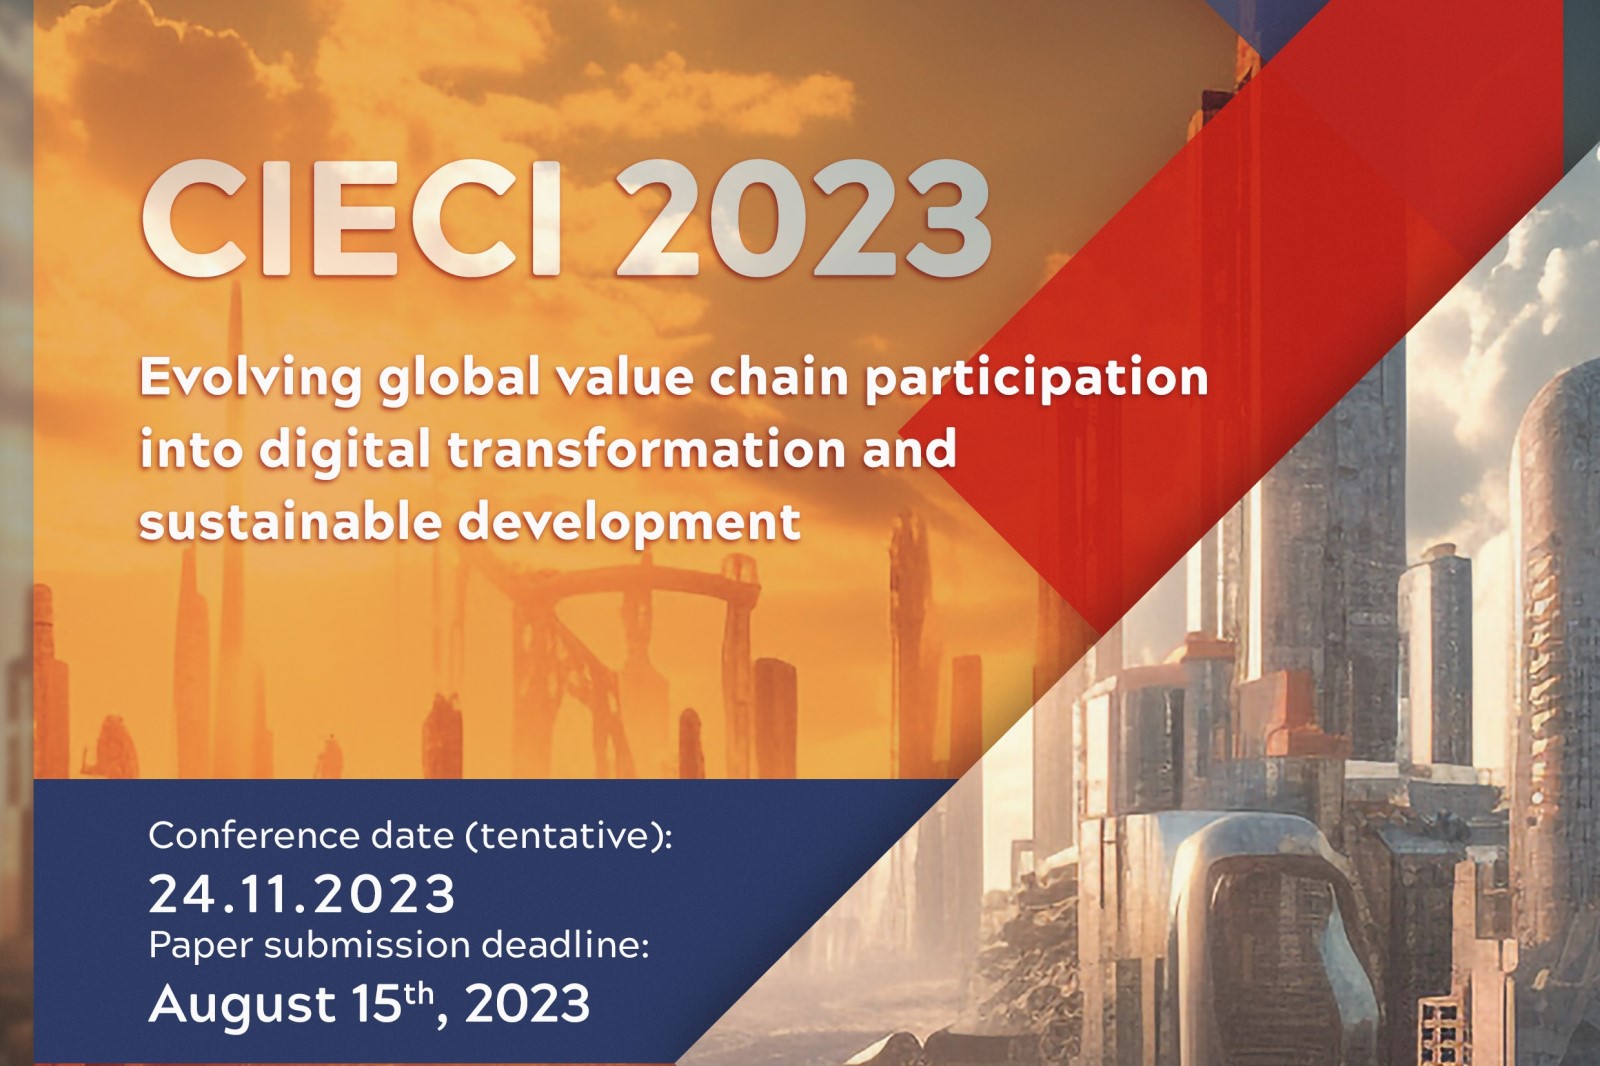 Thư mời viết bài: Hội thảo về hợp tác và hội nhập kinh tế quốc tế 2023 (Call for papers CIECI 2023)